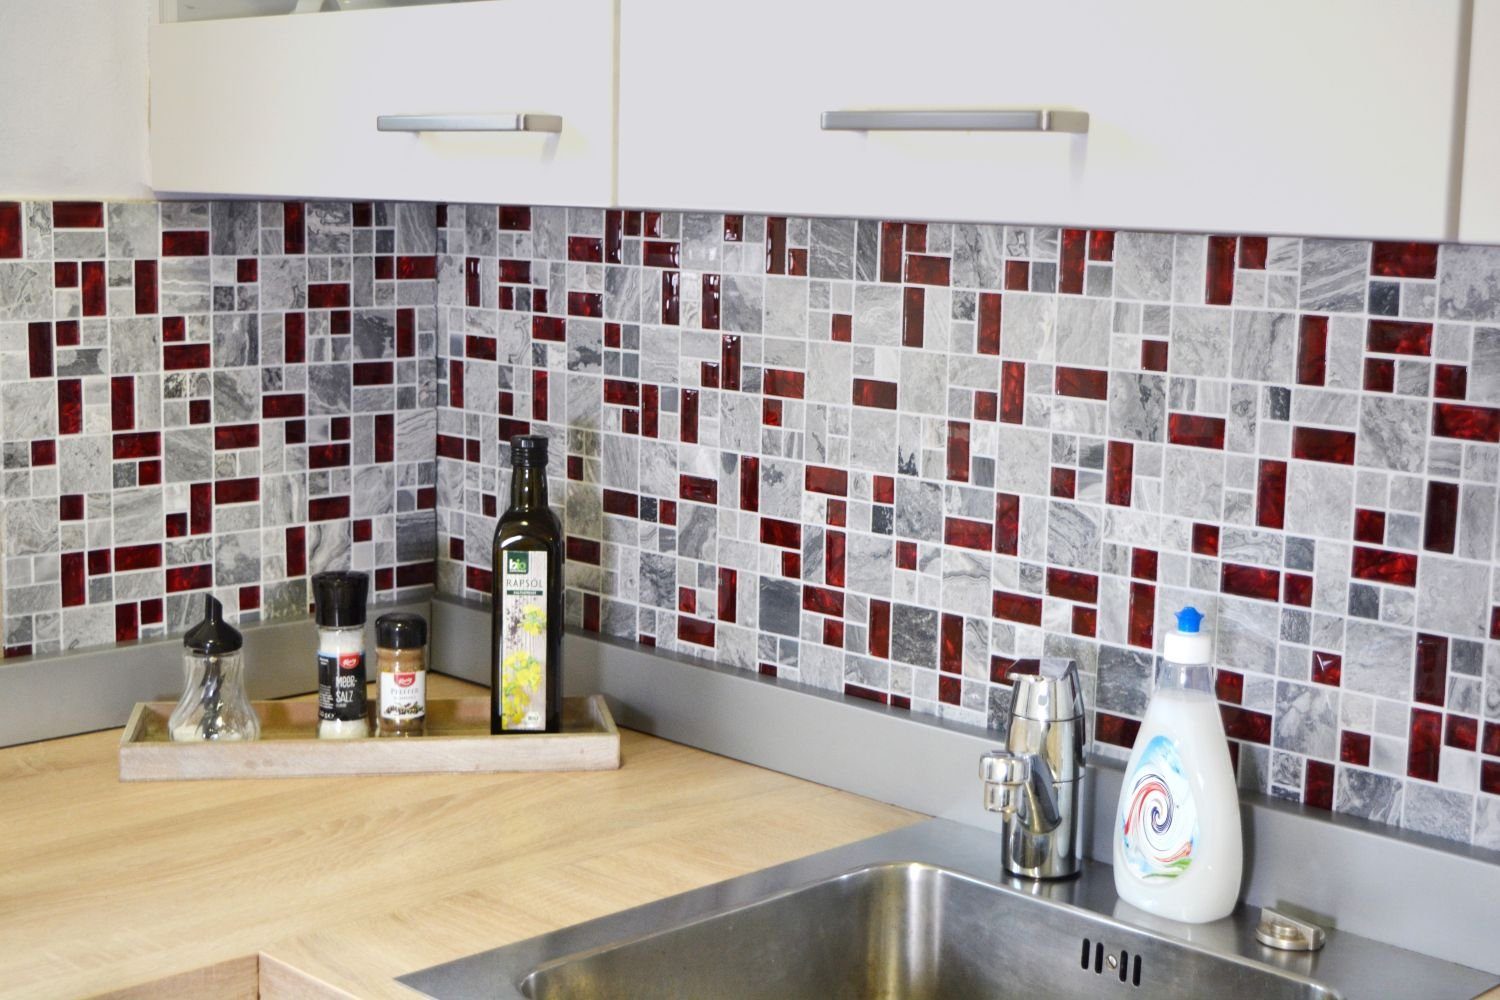 Mosani Mosaikfliesen 0,9m² Glasmosaik Naturstein grau mit rot glänzend, Set, 10-teilig, Küchenwand, Fliesenspiegel